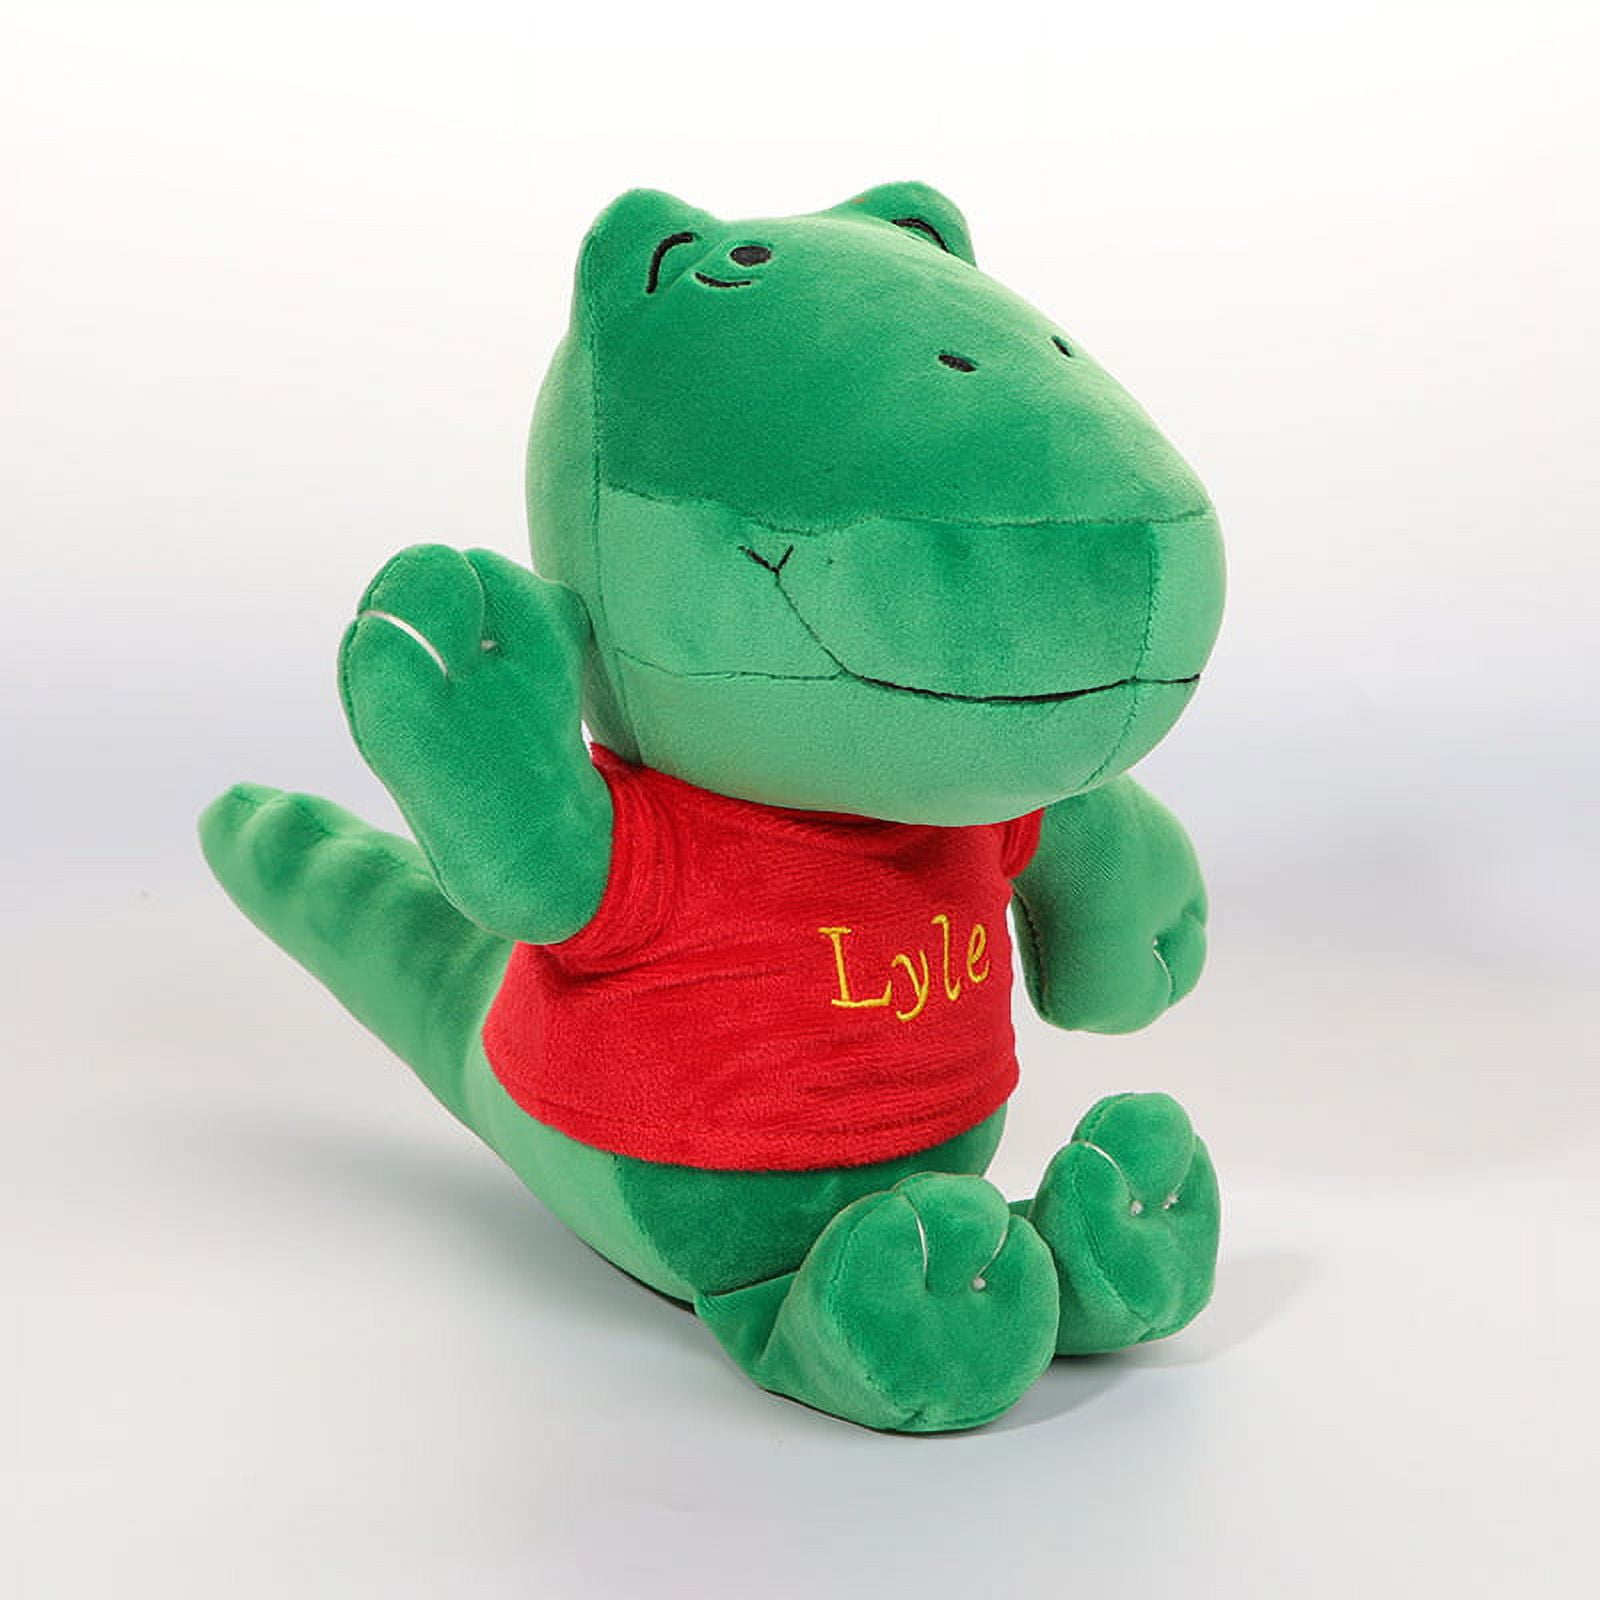 Lyle Lyle Crocodile plush - small by Manhattan Toy